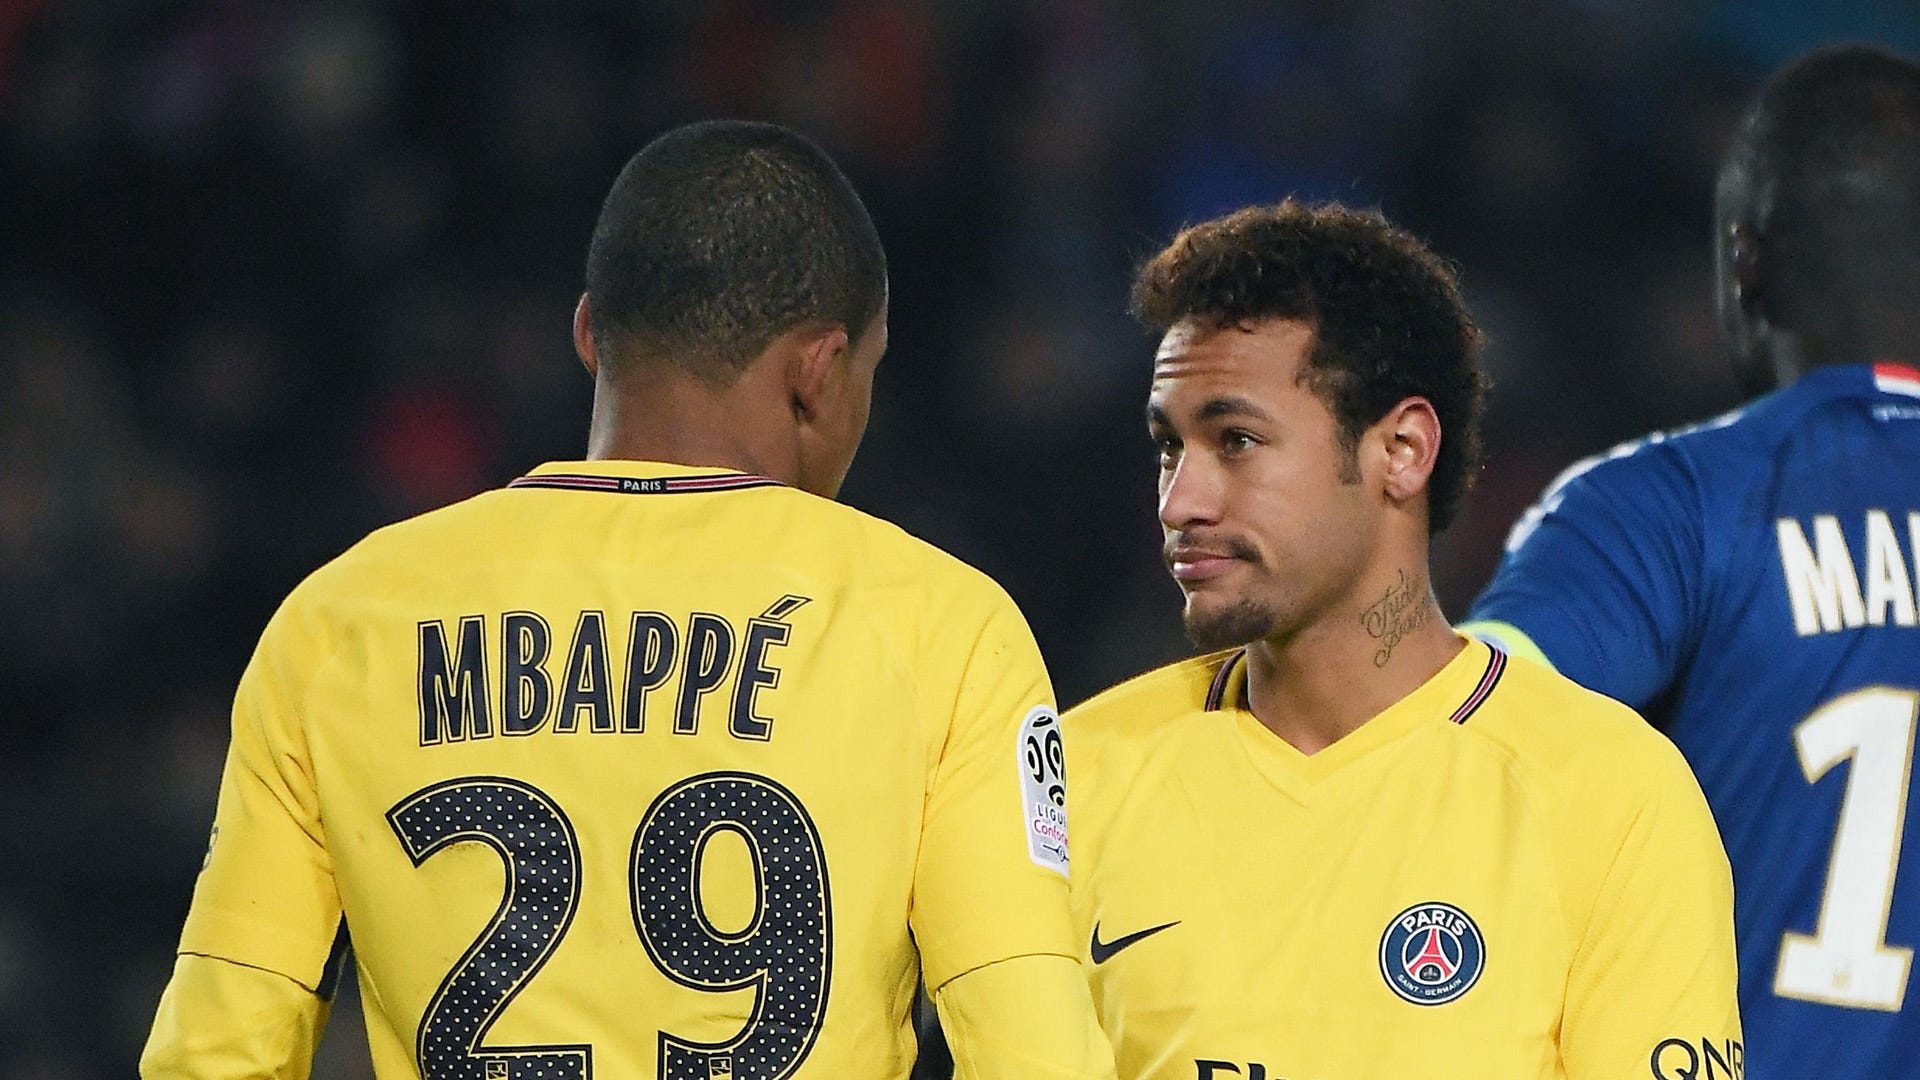 TIẾT LỘ: Ở PSG, Neymar và Mbappe chẳng ưa gì nhau